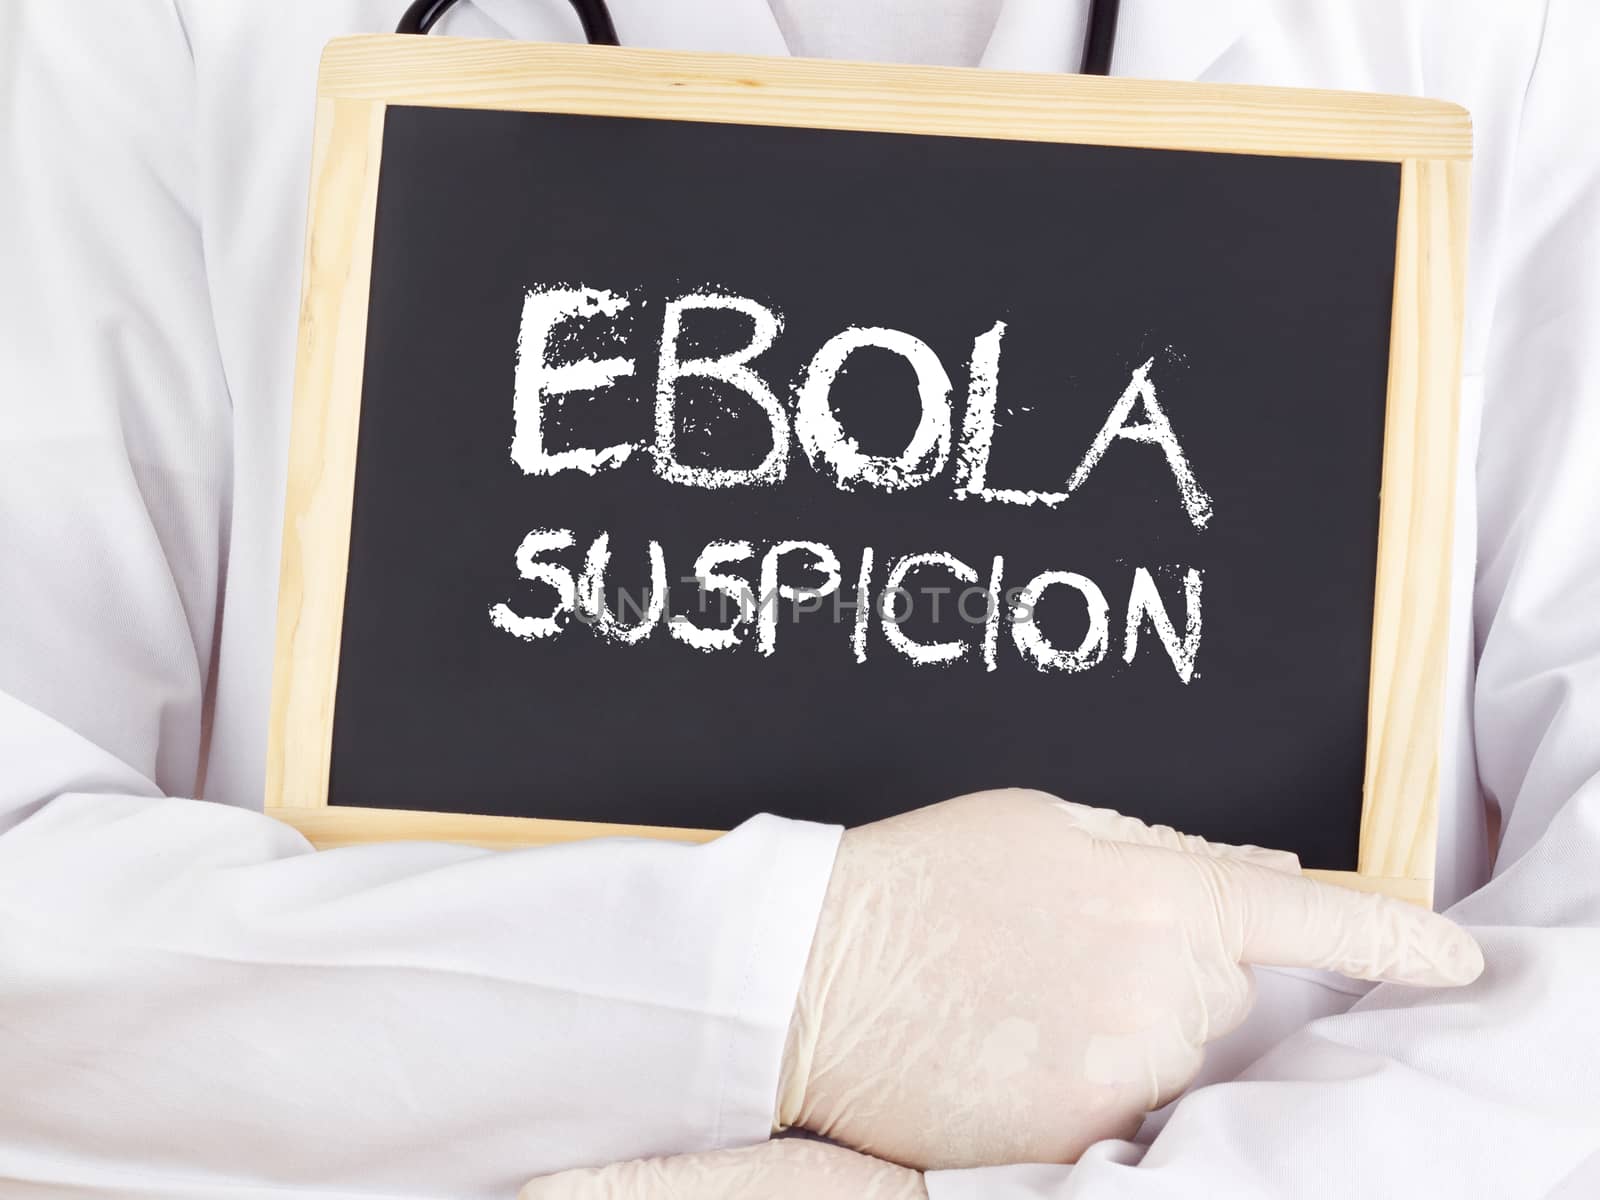 Doctor shows information: Ebola suspicion